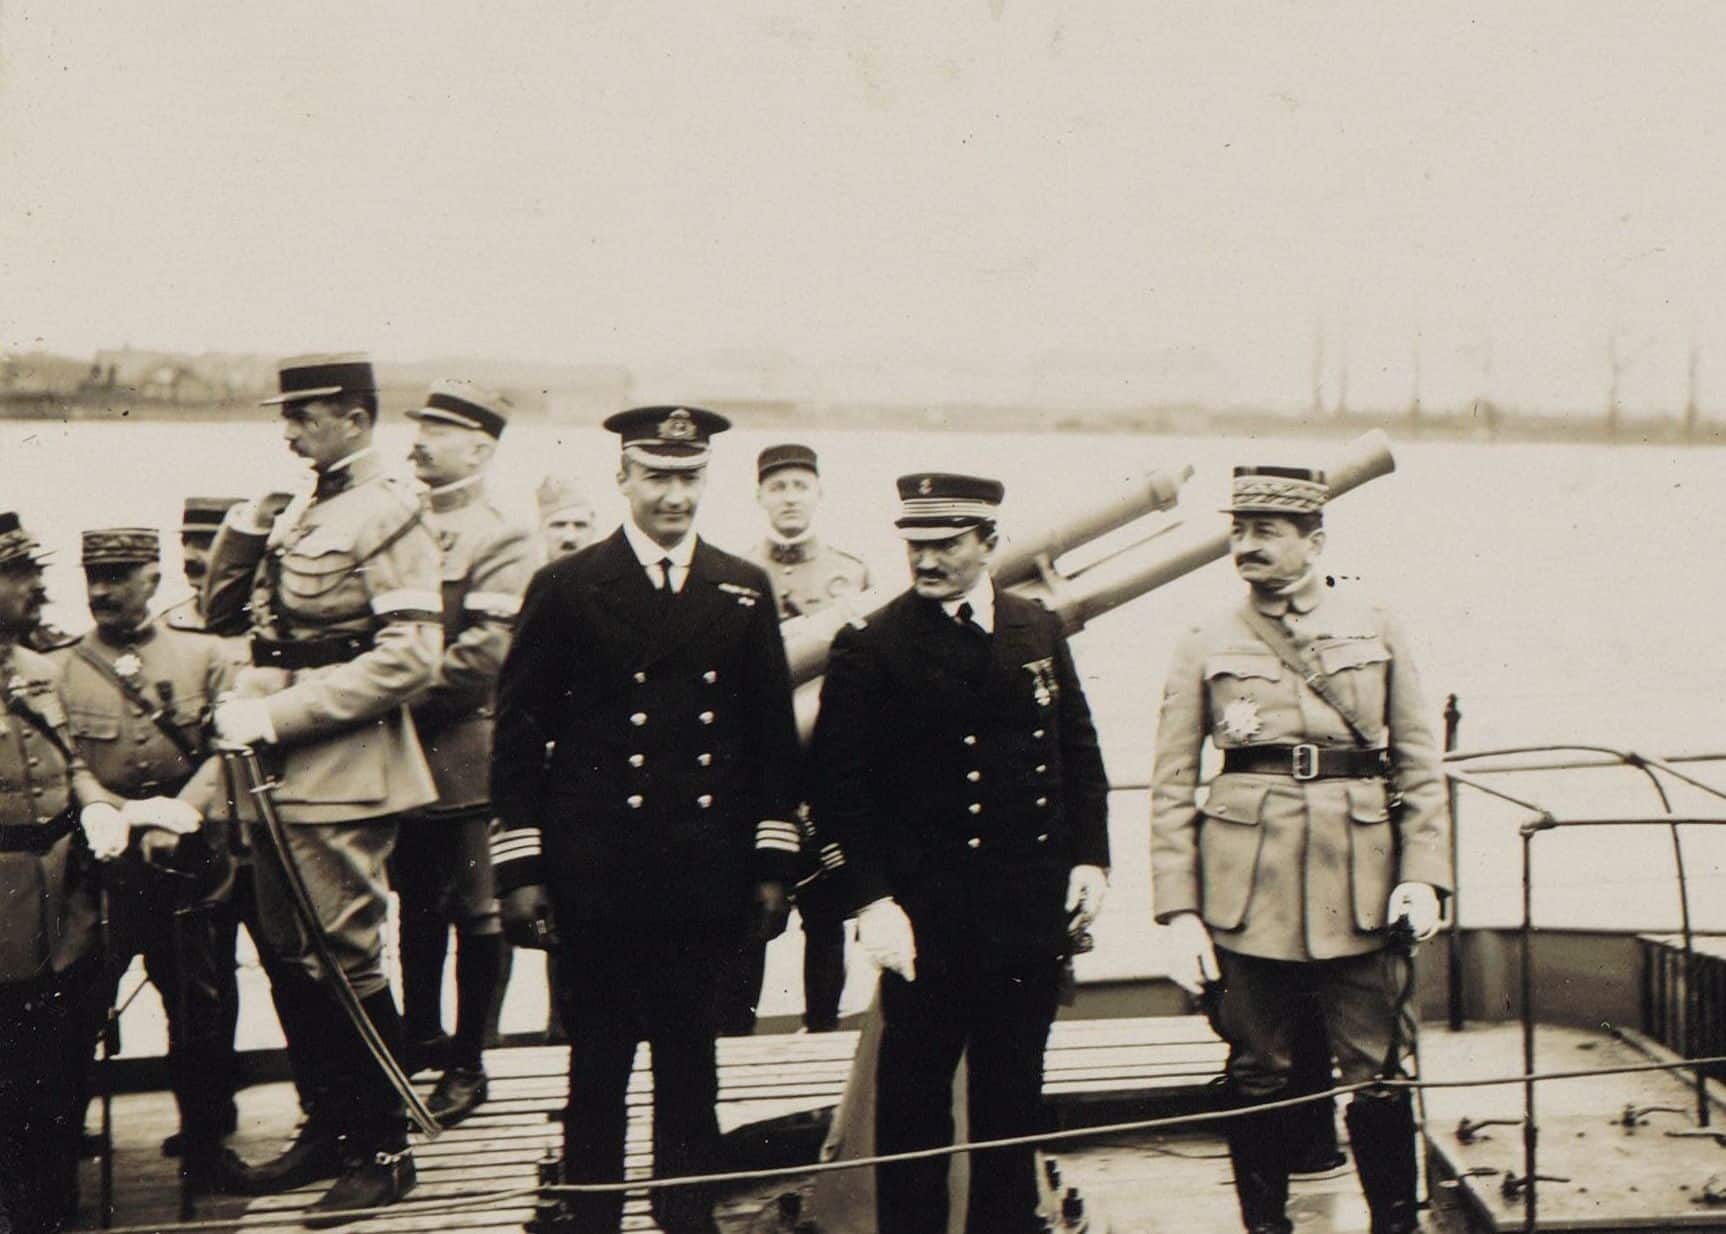 Revue de la flottille alliée sur le Rhin à Mayence le 23 avril 1919. Au premier plan, le capitaine Darlan, entre le général Mangin et le commander britannique Achison.
Crédit : auteur inconnu, wikimedia commons